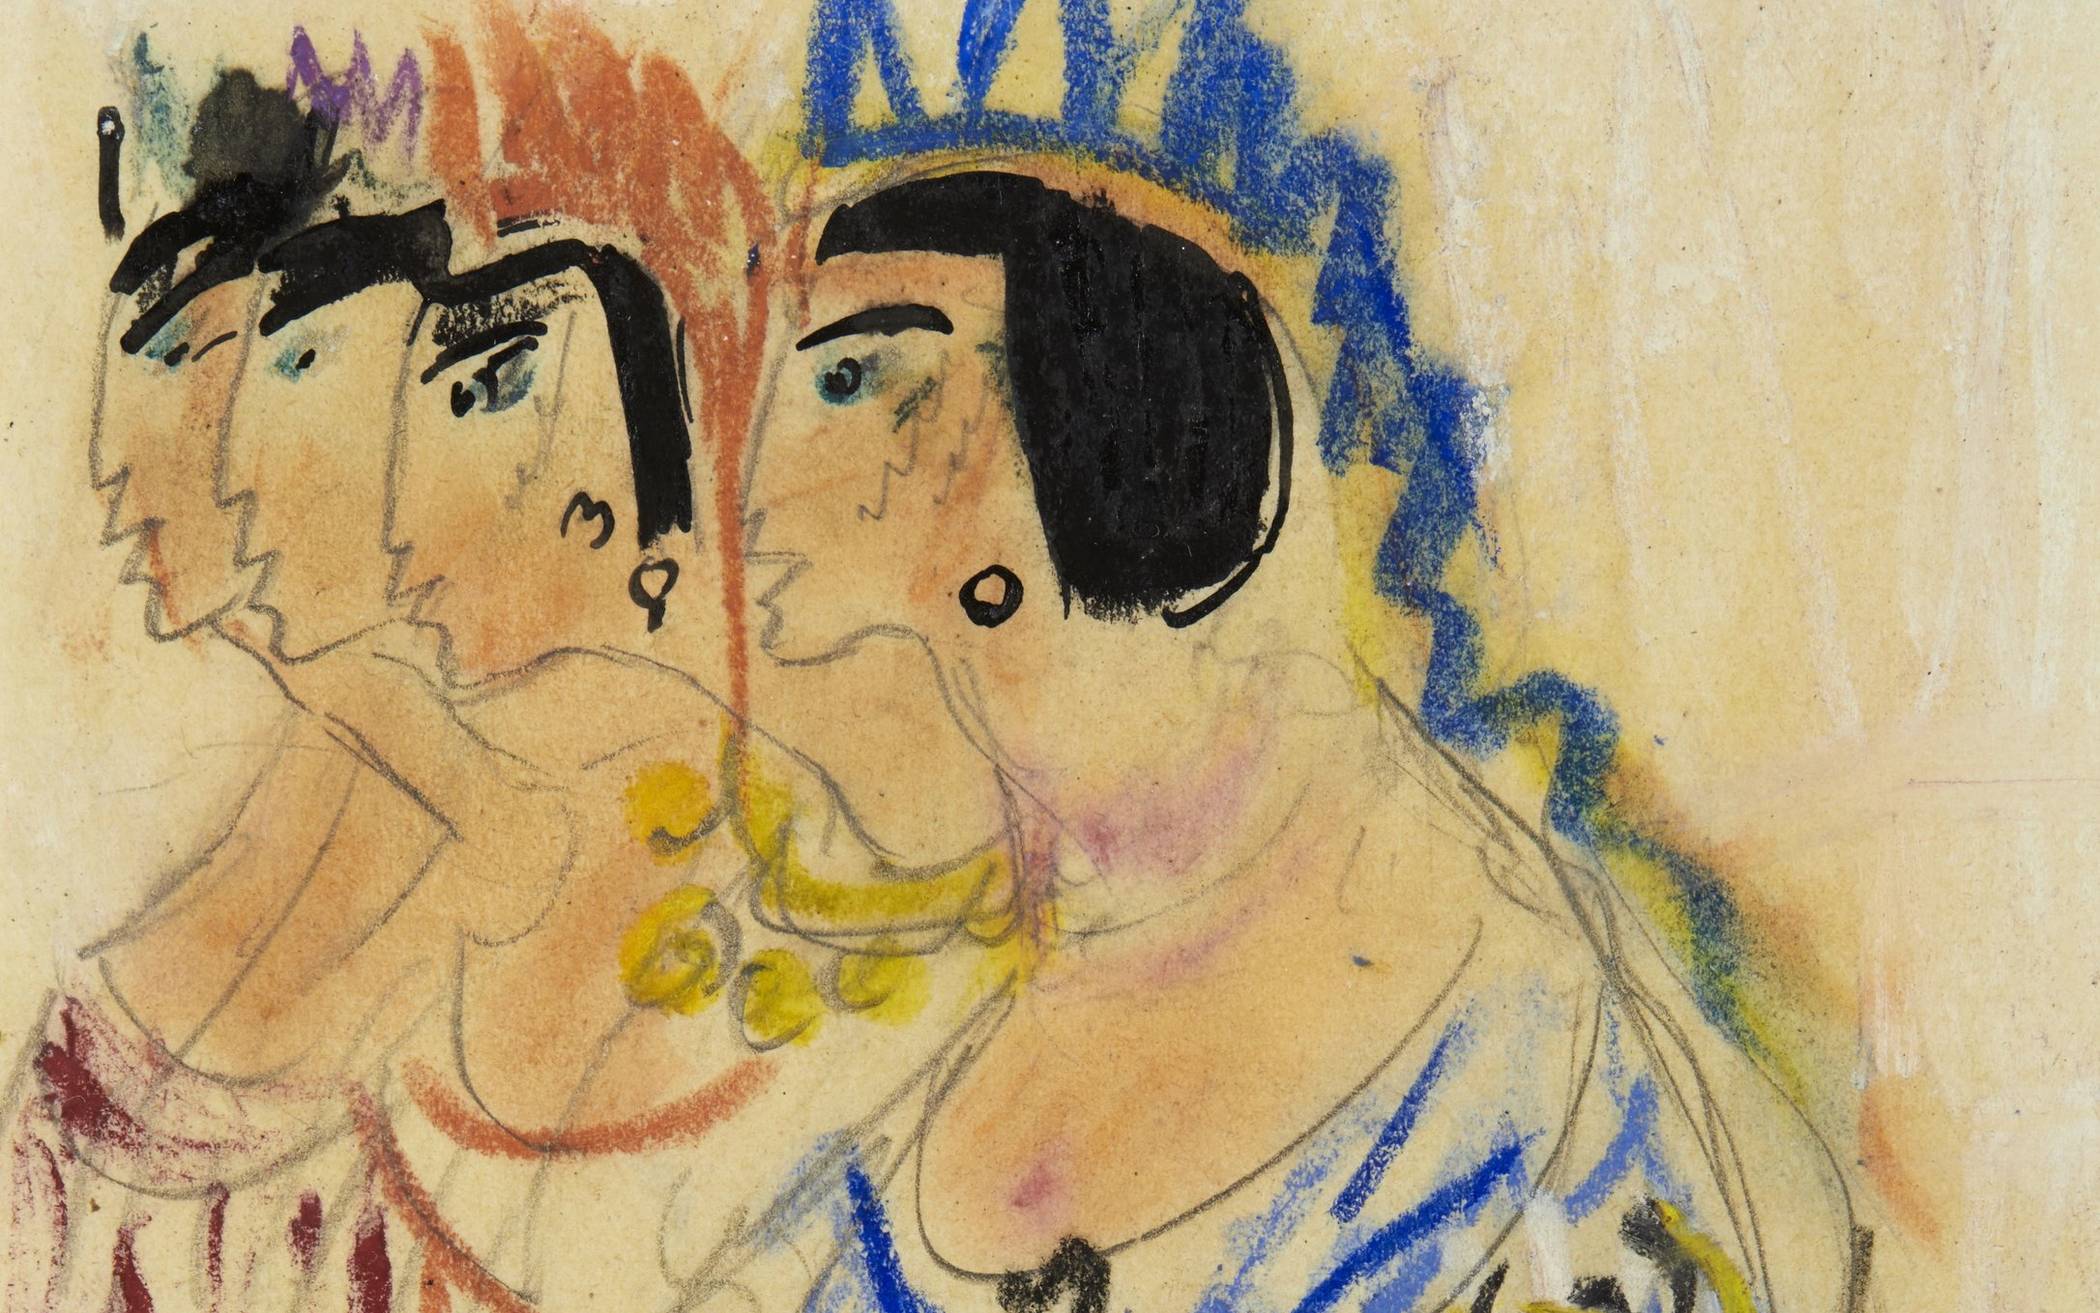  „Indianerinnen“ - eine der Zeichnungen, die ab Sonntag im Von der Heydt-Museum zu sehen sein werden.  